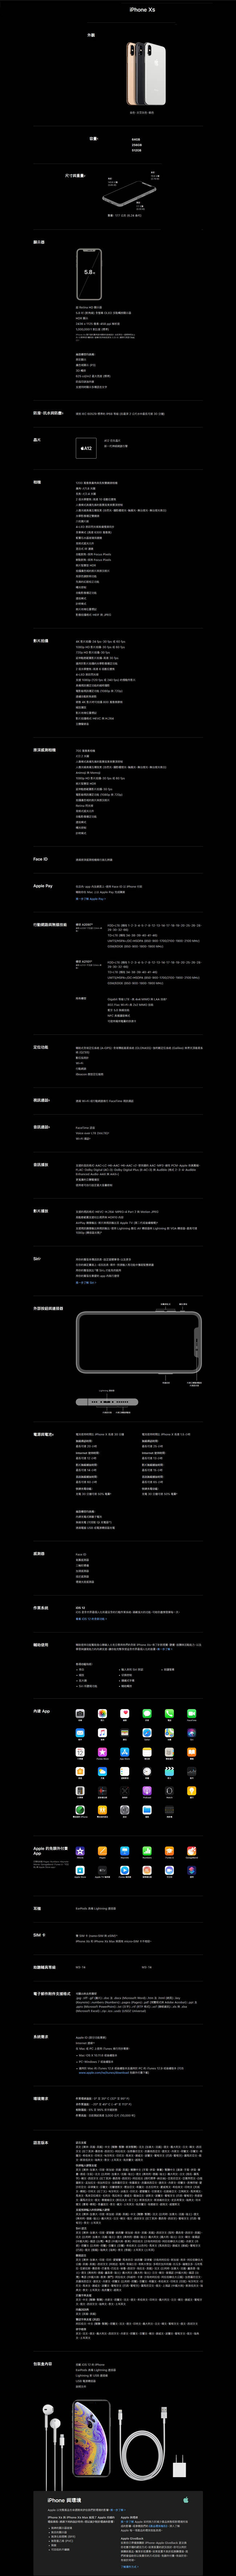 Apple iPhone XS 5.8吋 64GB 智慧型手機